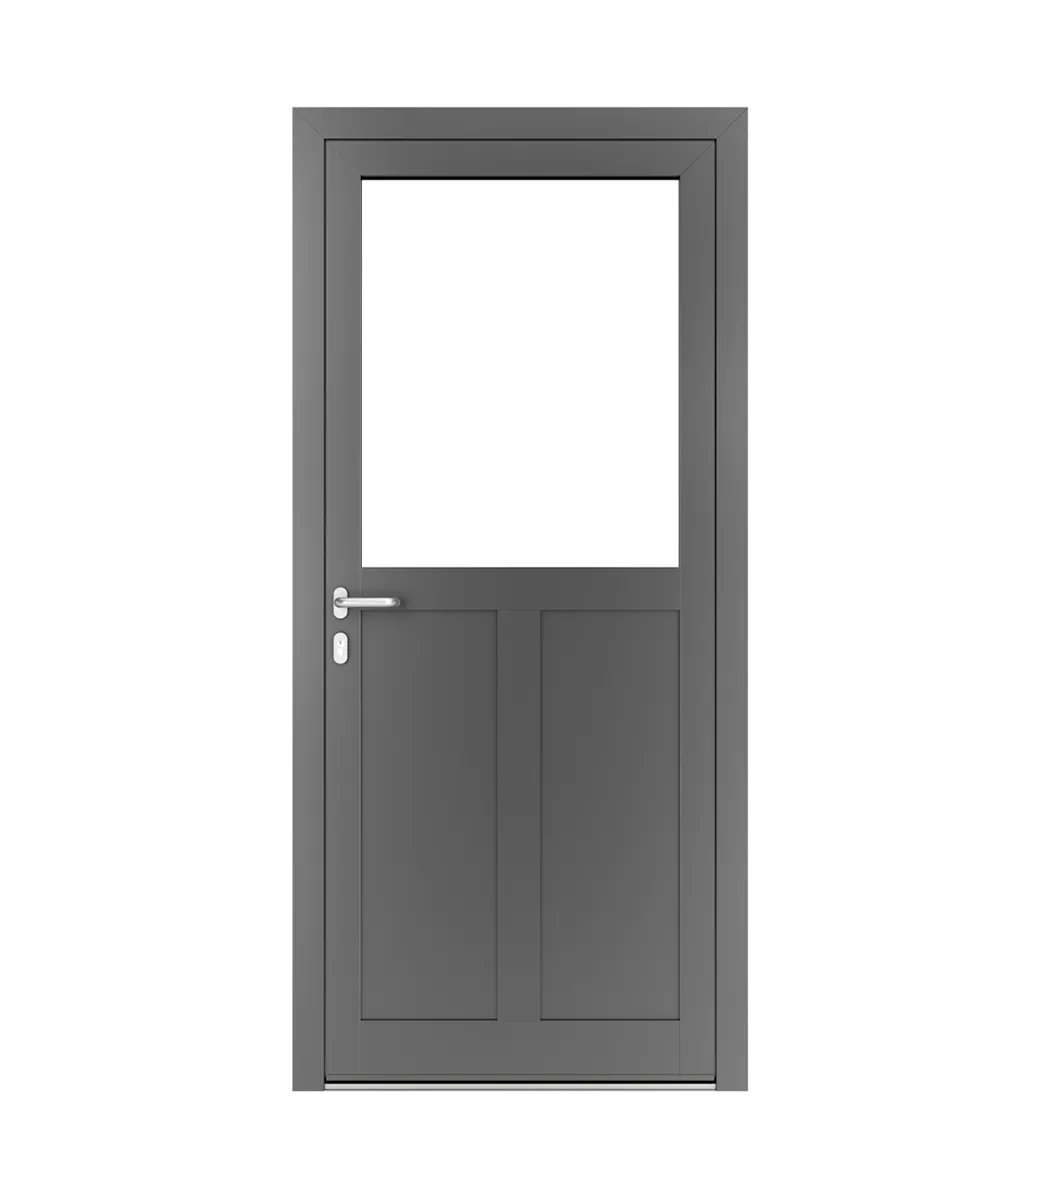 Spacers in aluminium doors